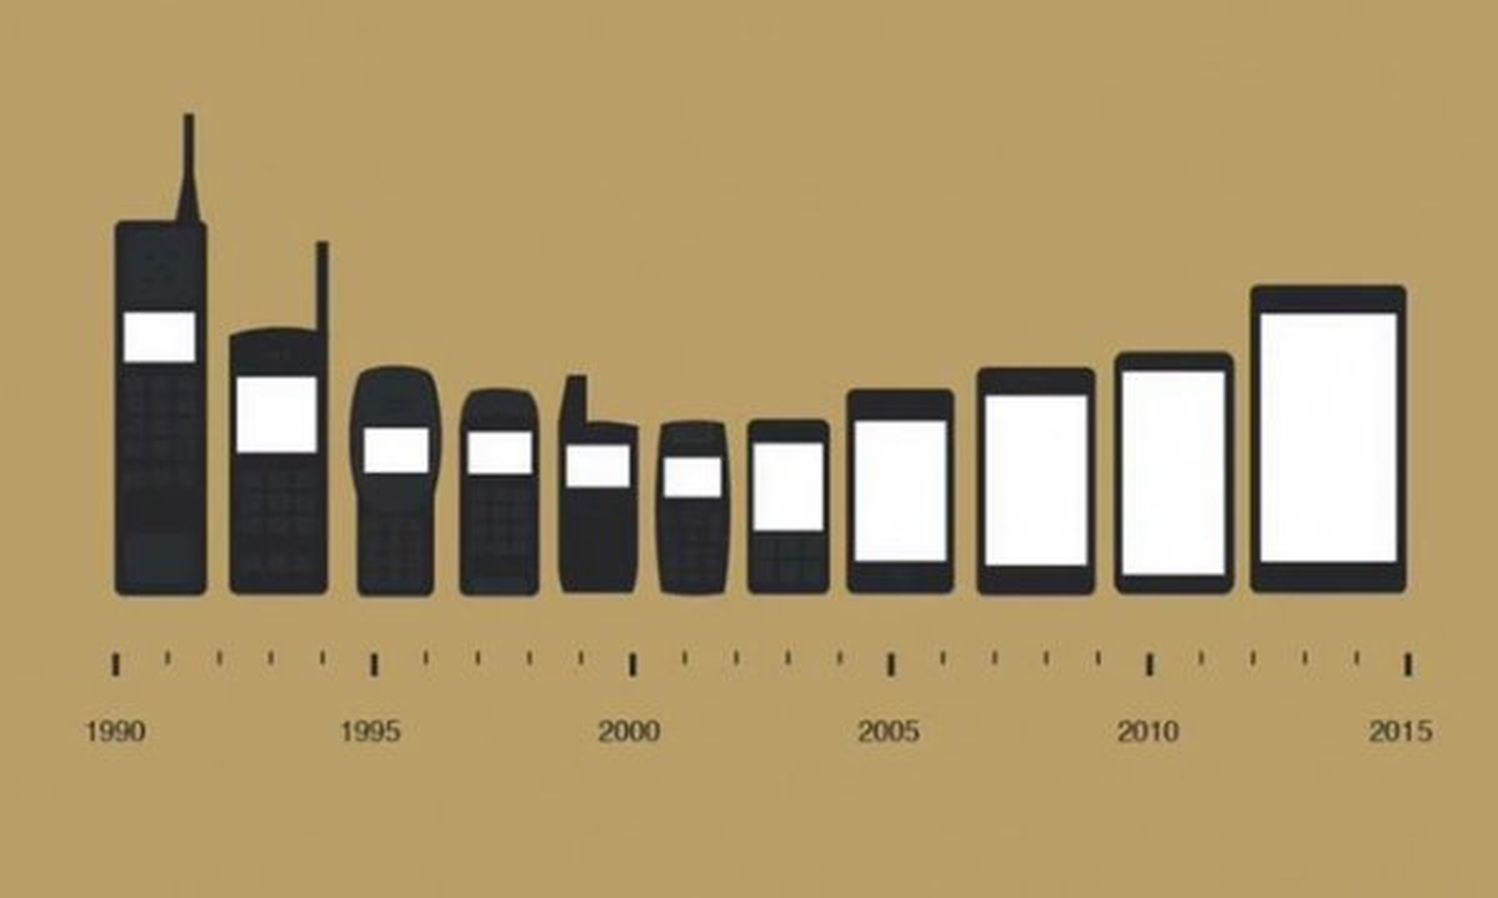 Hacia dónde va la evolución de los teléfonos móviles?